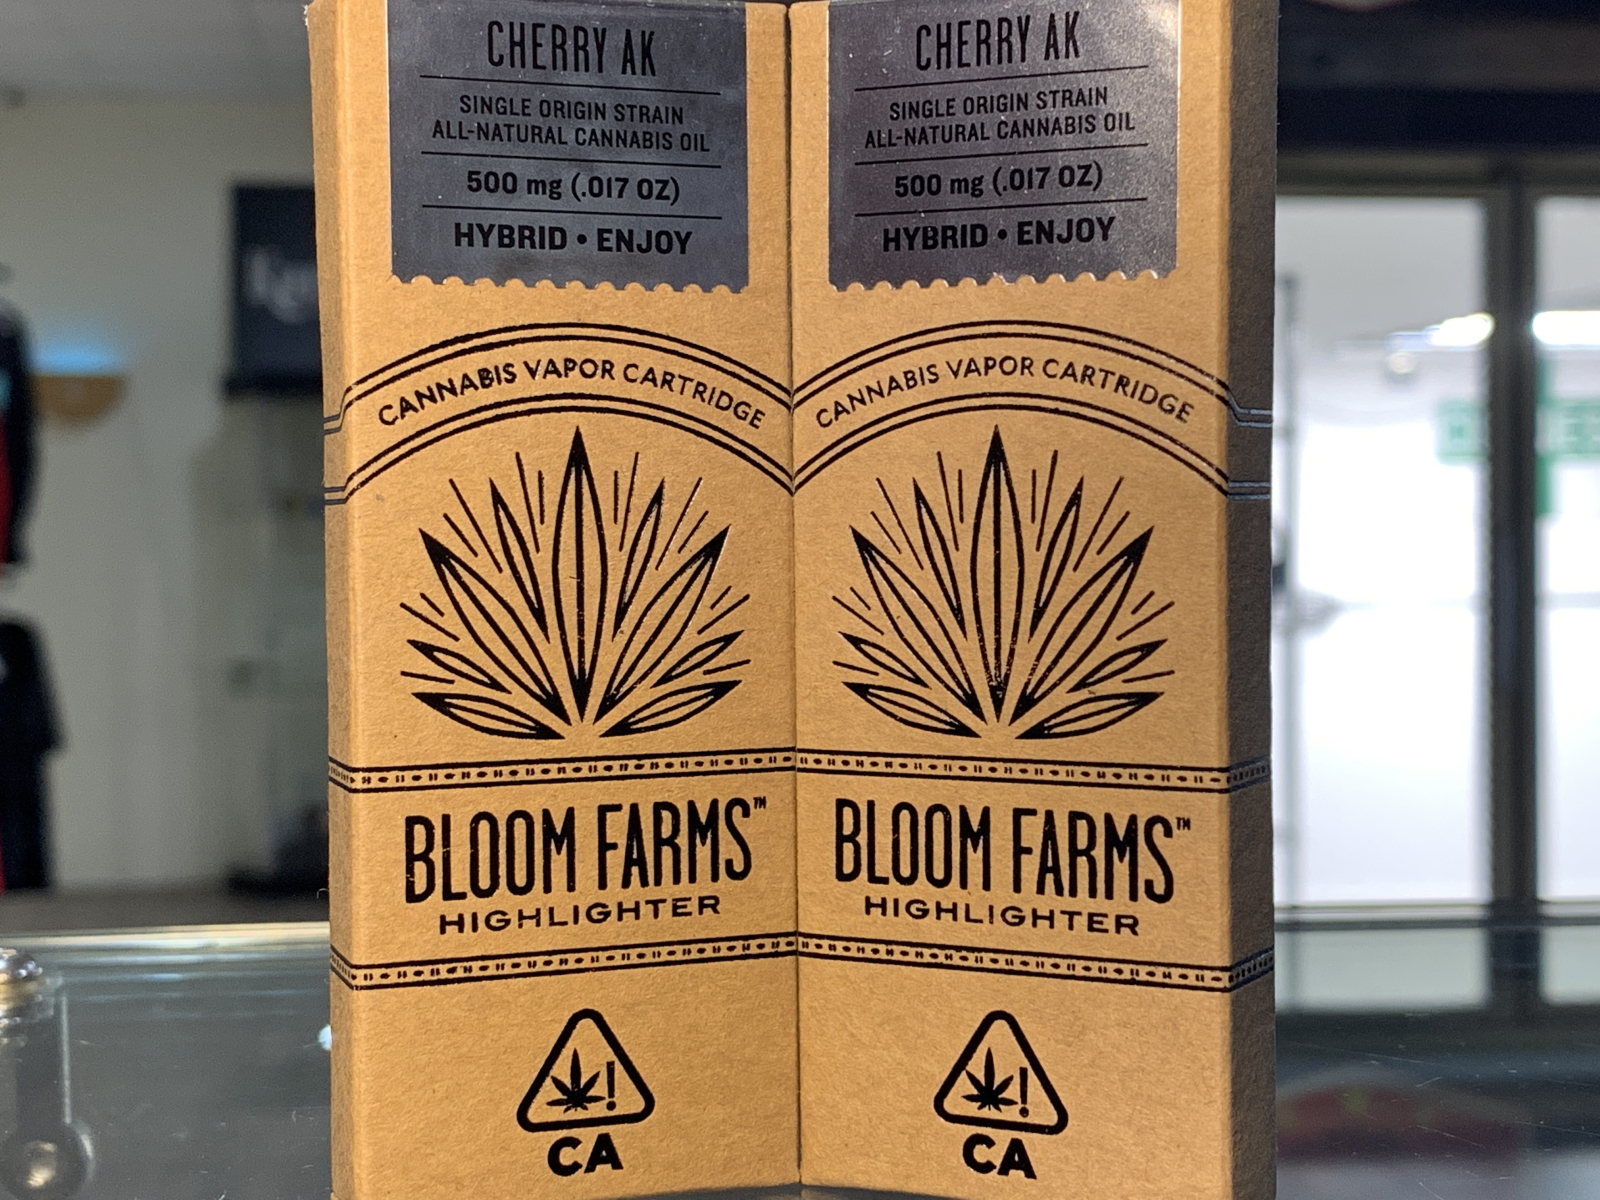 Bloomfarms Cherry AK half gram cartridge 